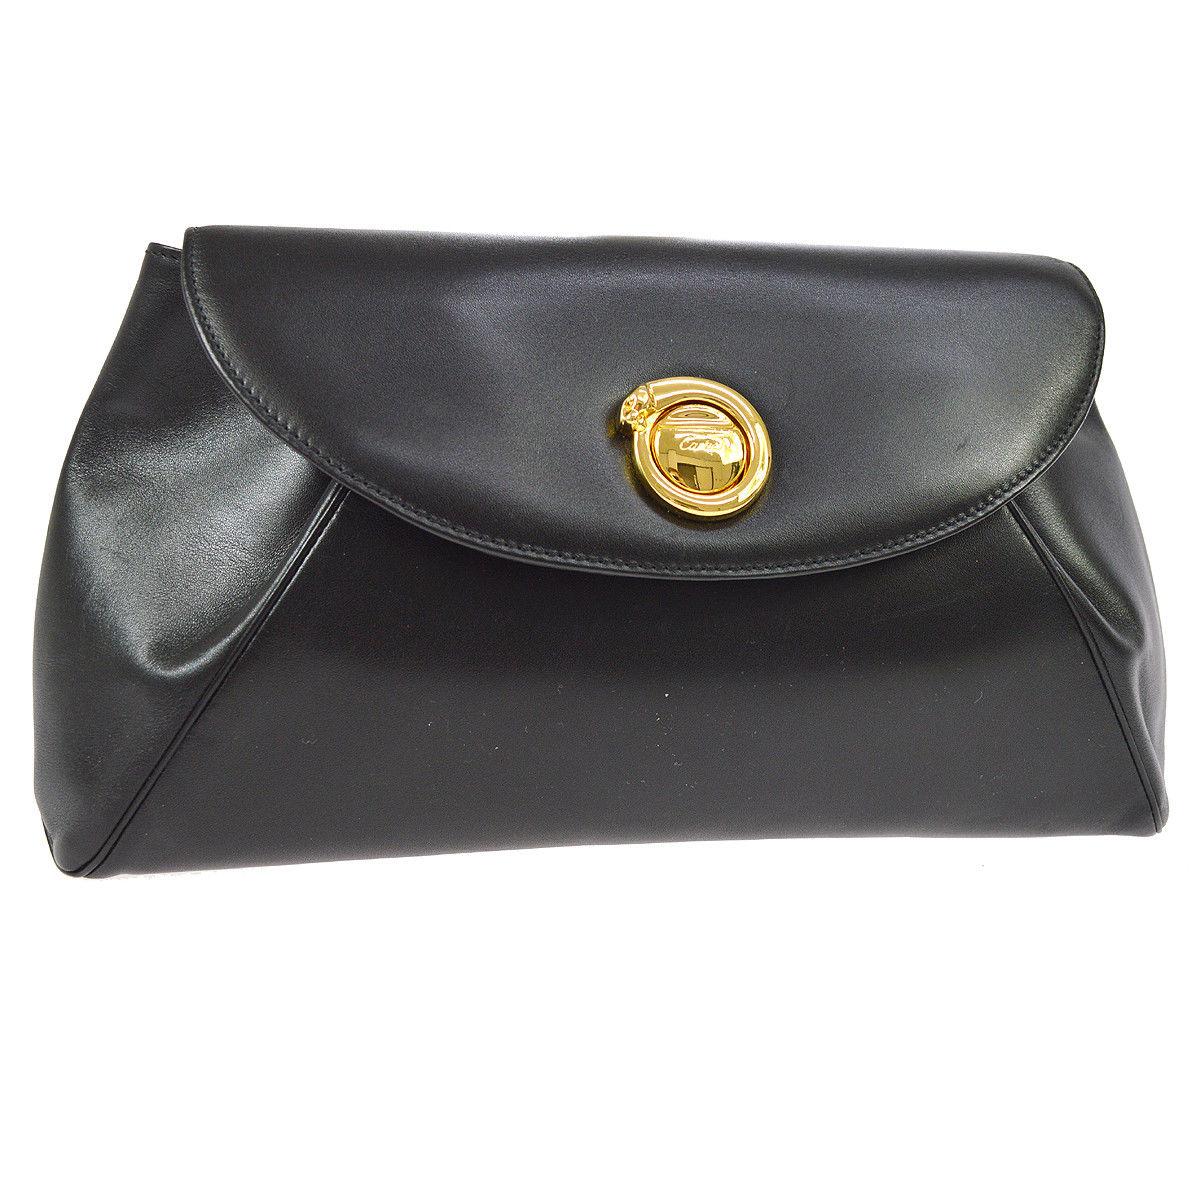 Cartier Black Leather Gold Emblem Envelope Evening Flap Clutch Bag at ...